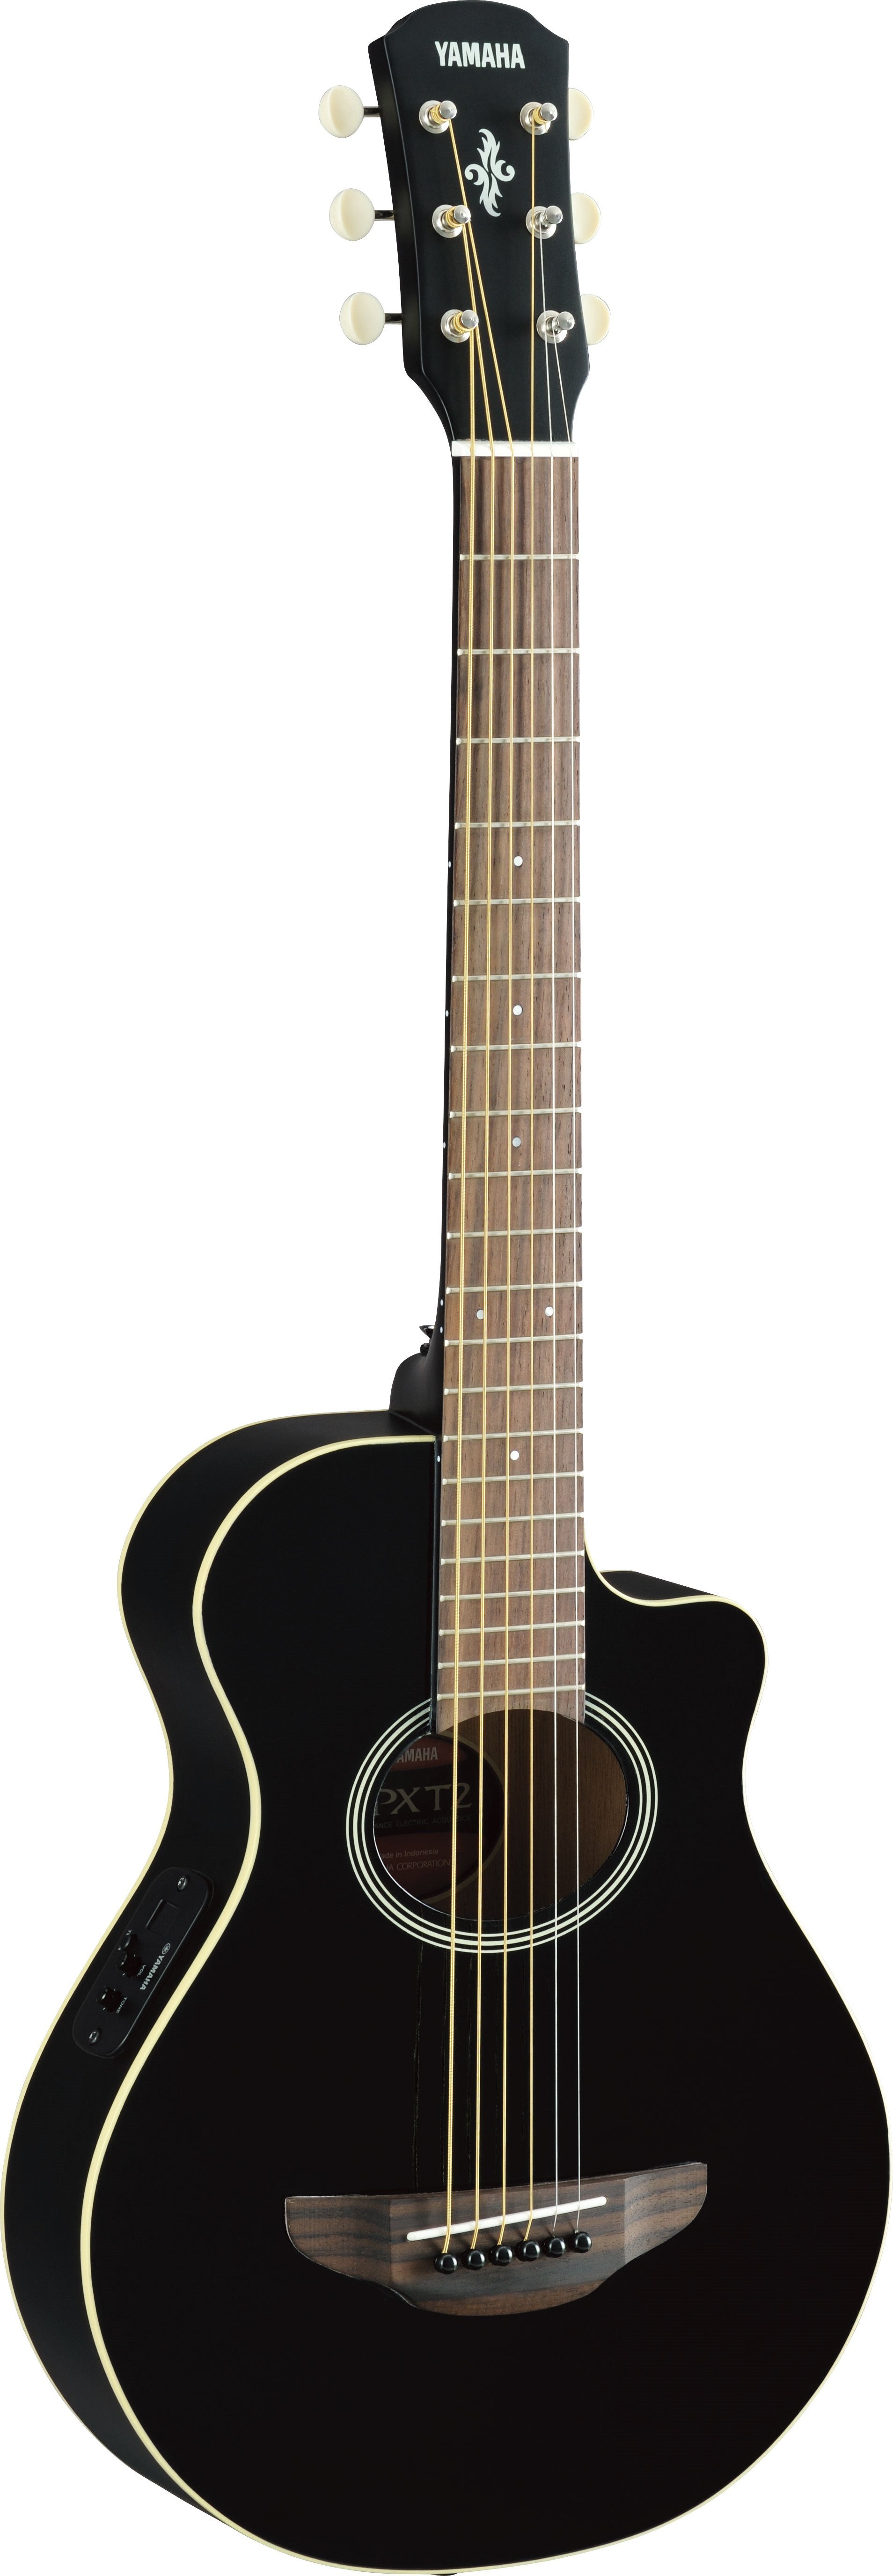 Yamaha APXT2 3/4 size acoustic-electric guitar (Black) 電木結他